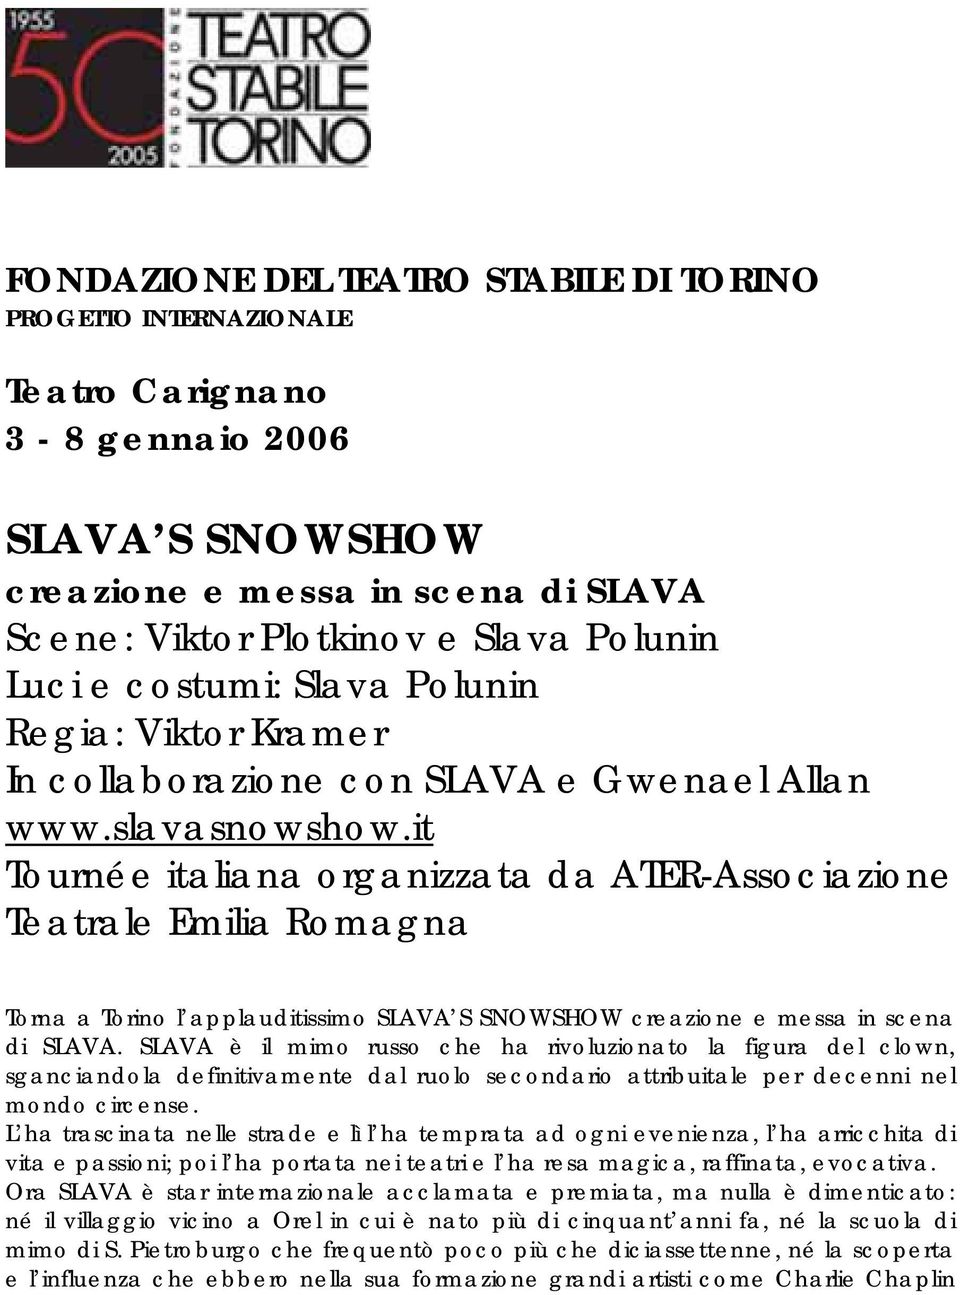 it Tournée italiana organizzata da ATER-Associazione Teatrale Emilia Romagna Torna a Torino l applauditissimo SLAVA S SNOWSHOW creazione e messa in scena di SLAVA.